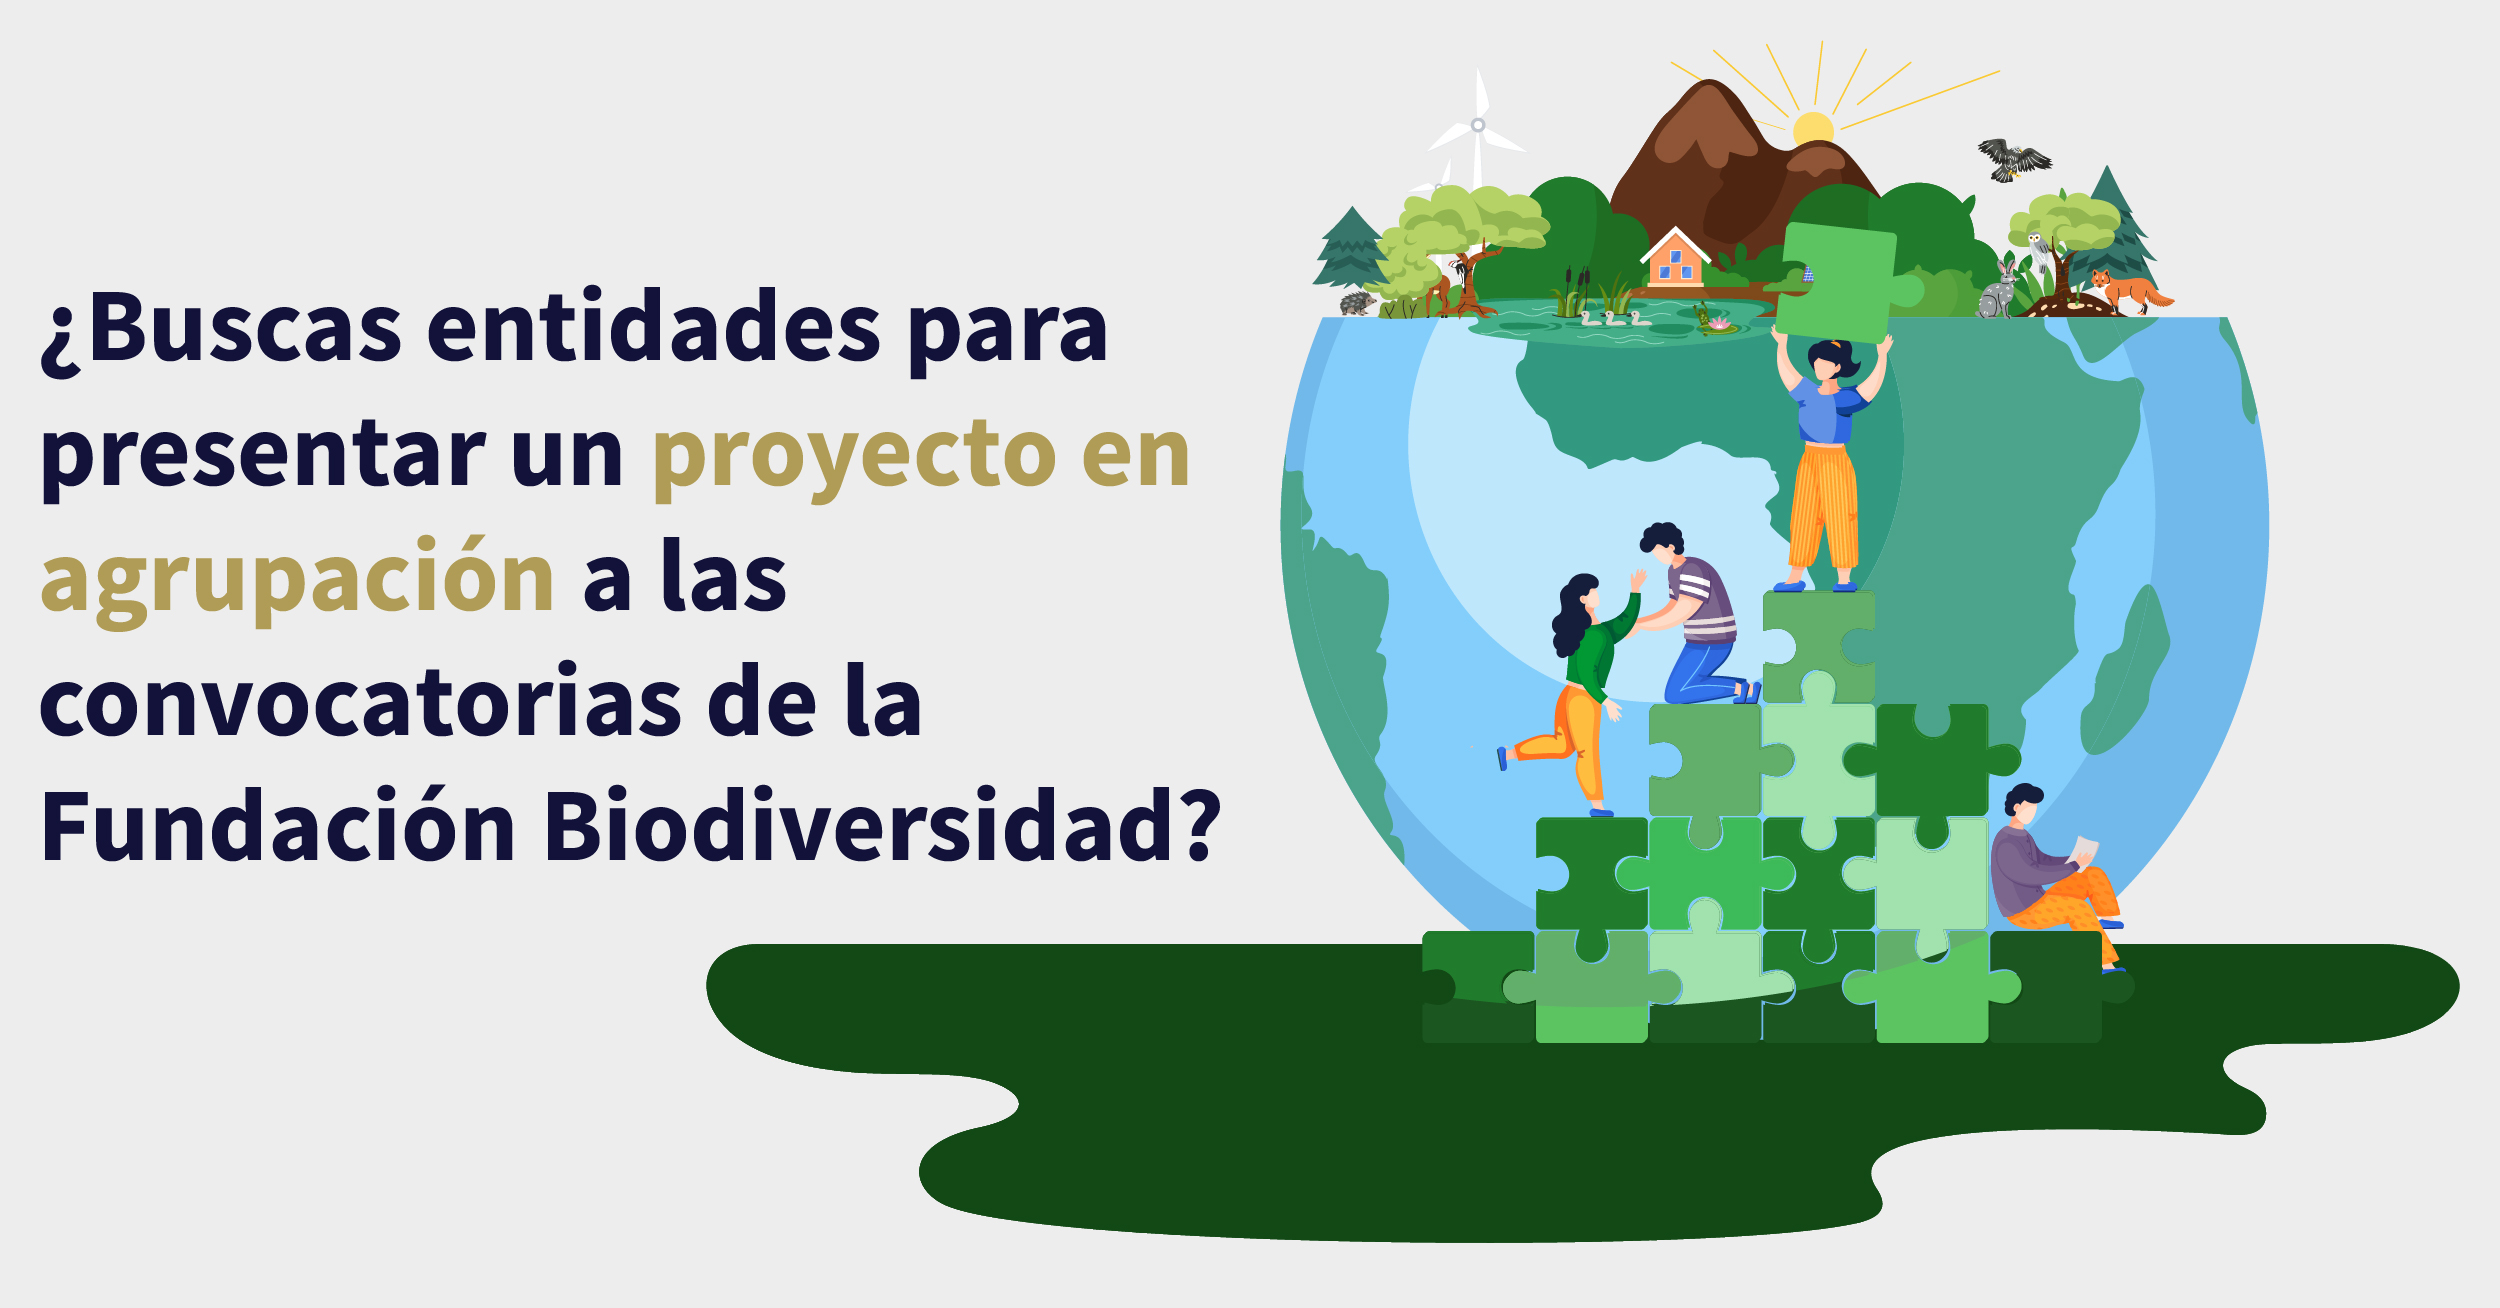 ¿Buscas entidades para presentar un proyecto en agrupación a las convocatorias de la Fundación Biodiversidad?